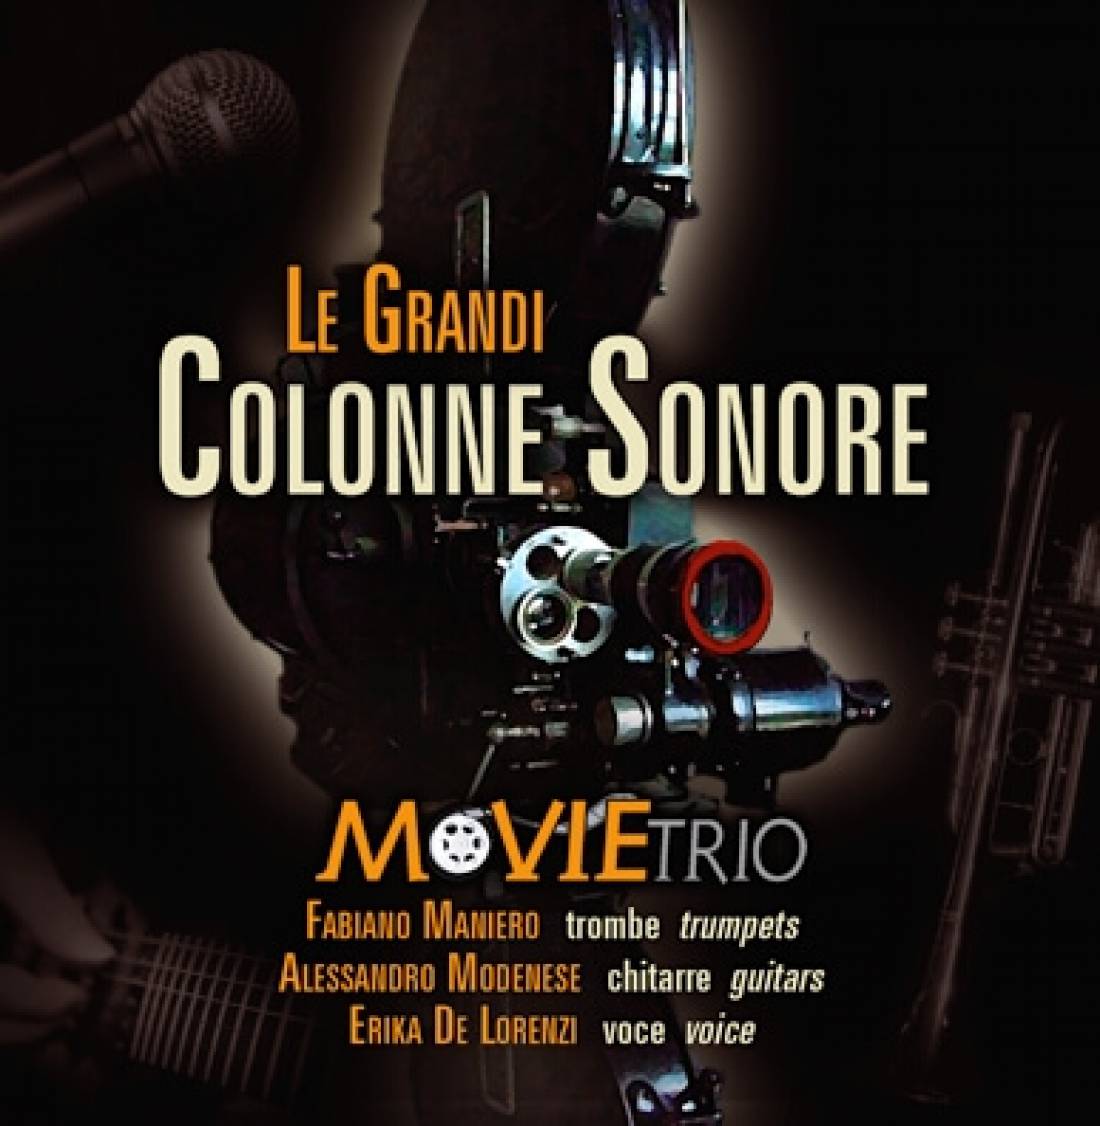 Le Grandi Colonne Sonore - CD - MovieTrio